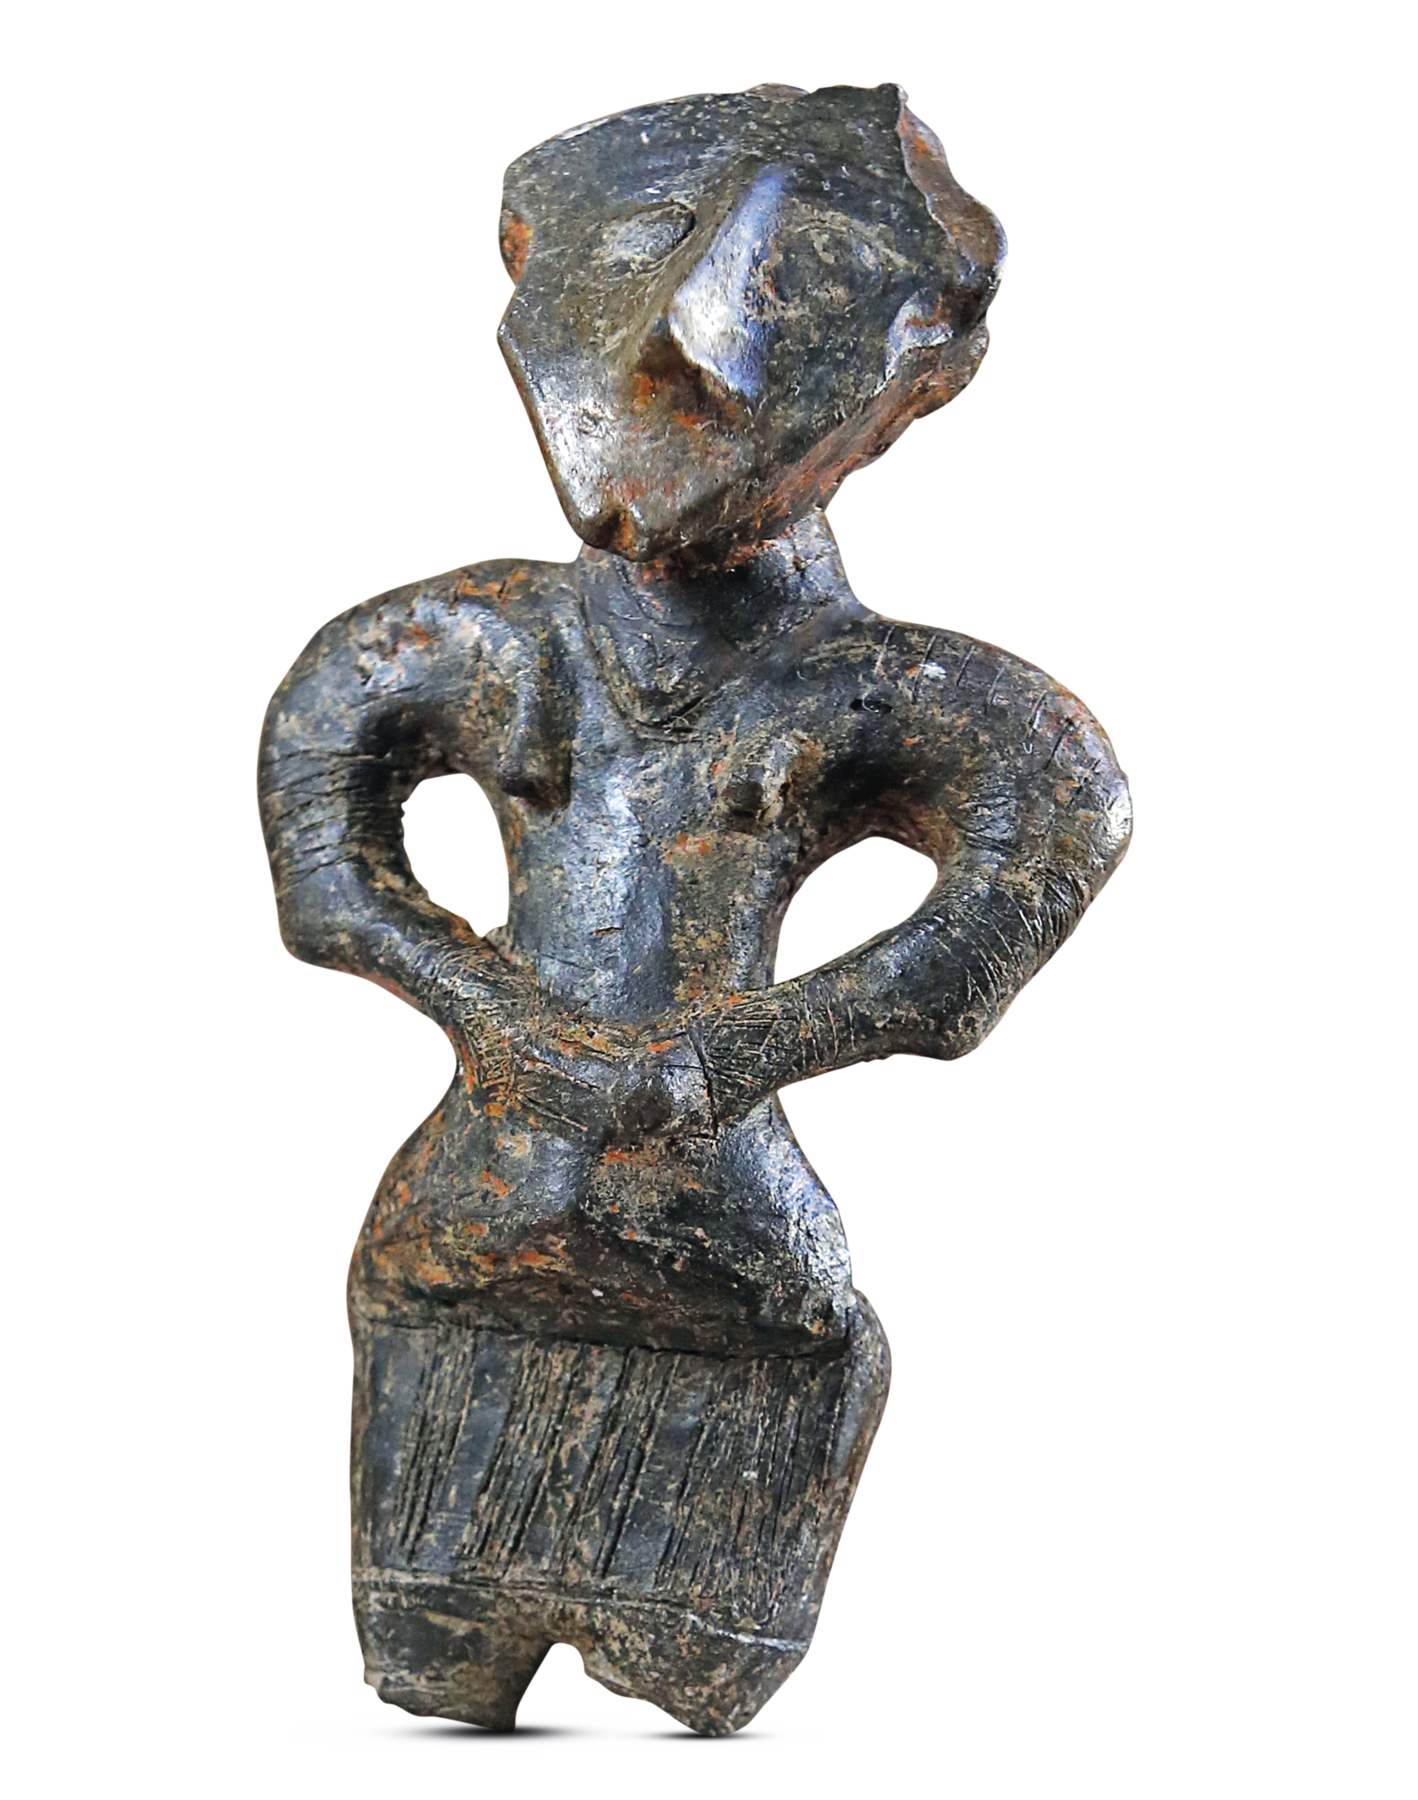 Fotografia. Em metal de cor escura com partes em marrom, uma estatueta vista de frente. Representa uma figura humana de nariz pontiagudo com as mãos sobre a cintura.